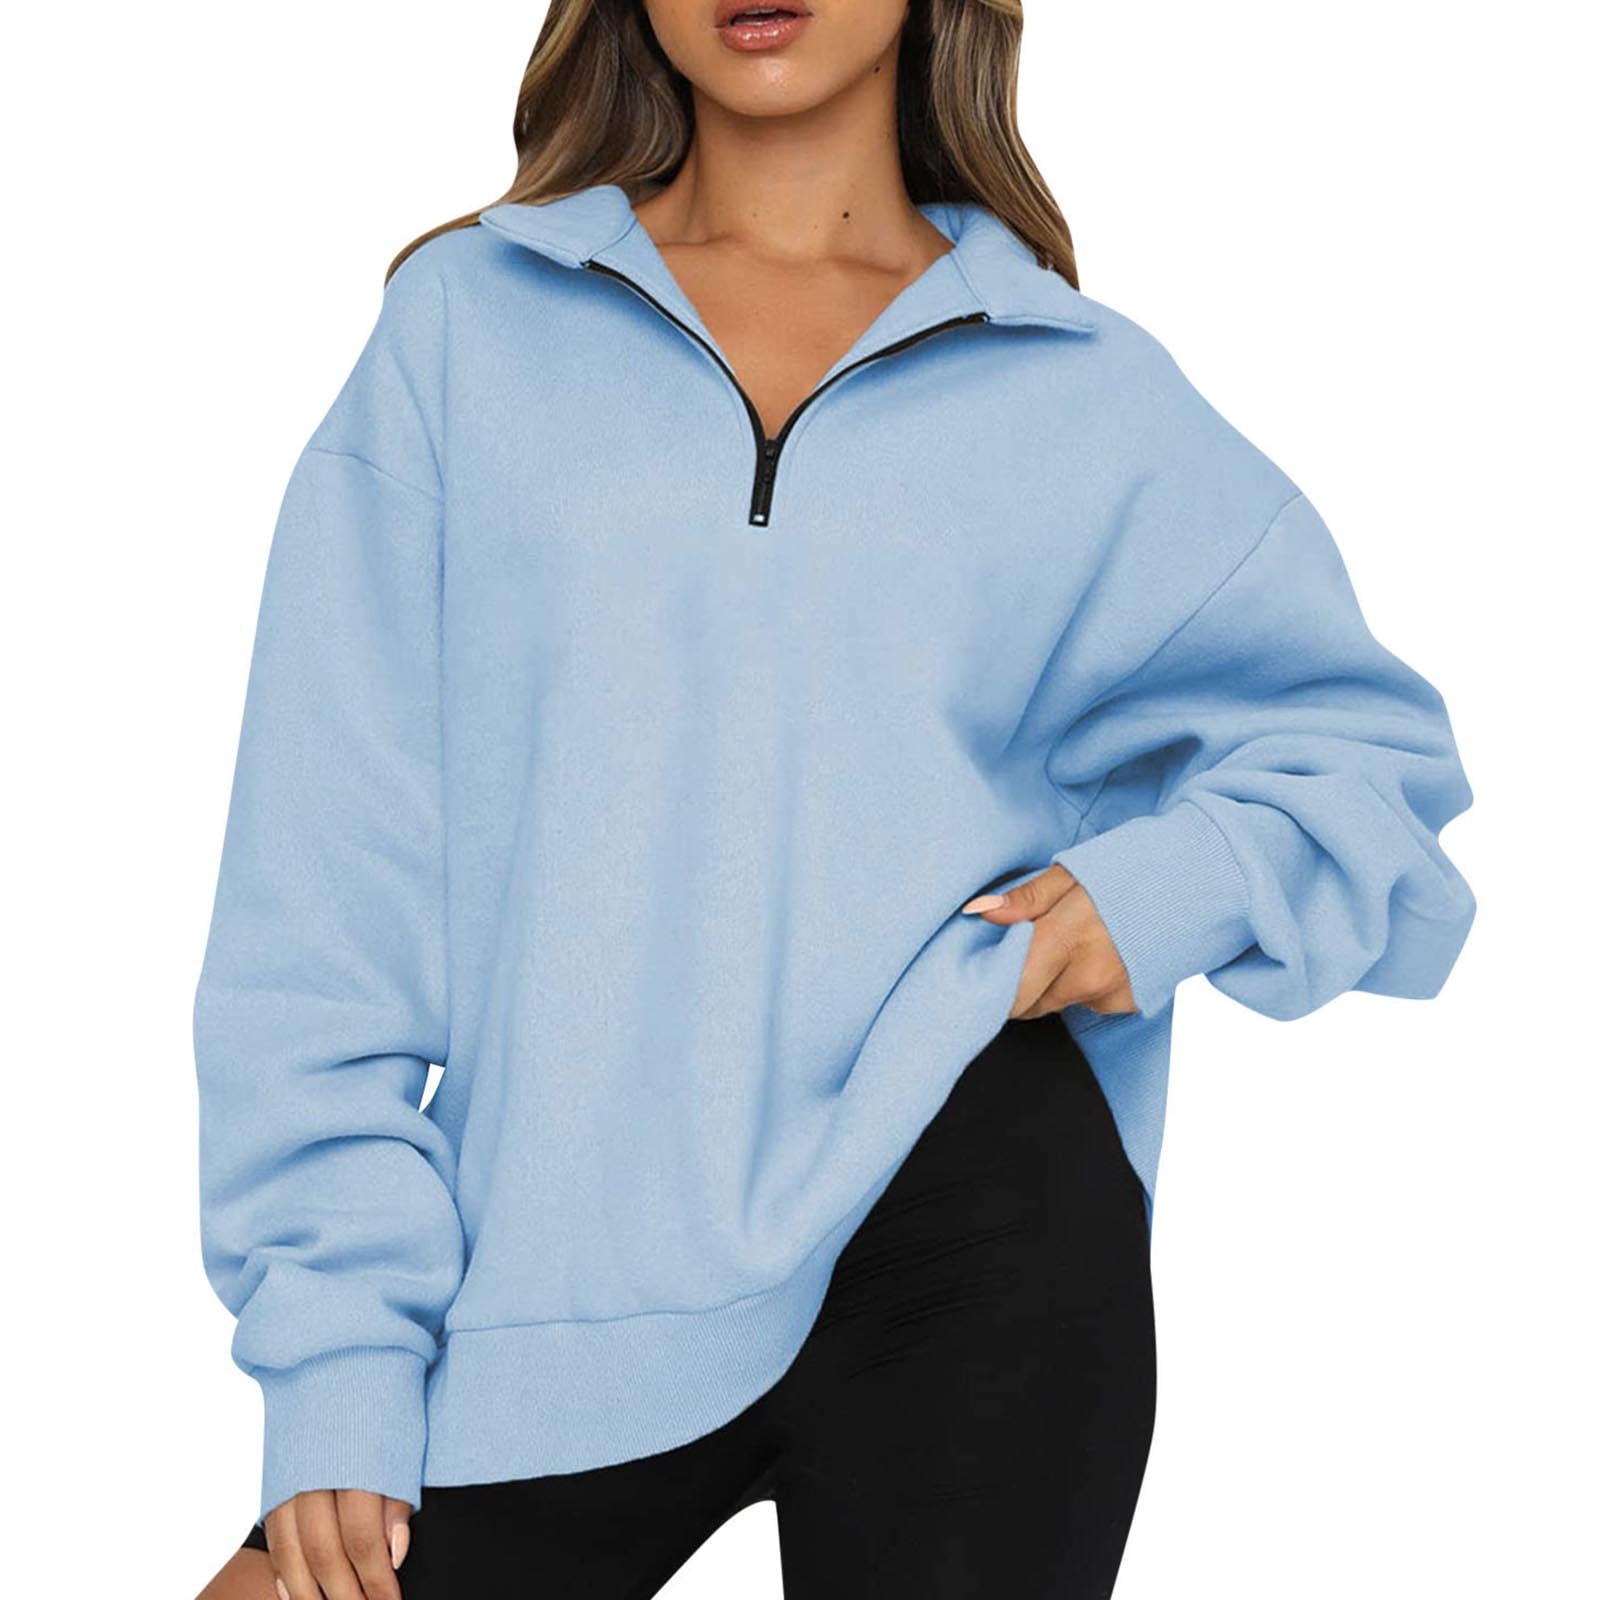 oversized womens sweatshirt,half zip sweater women,hoodies for